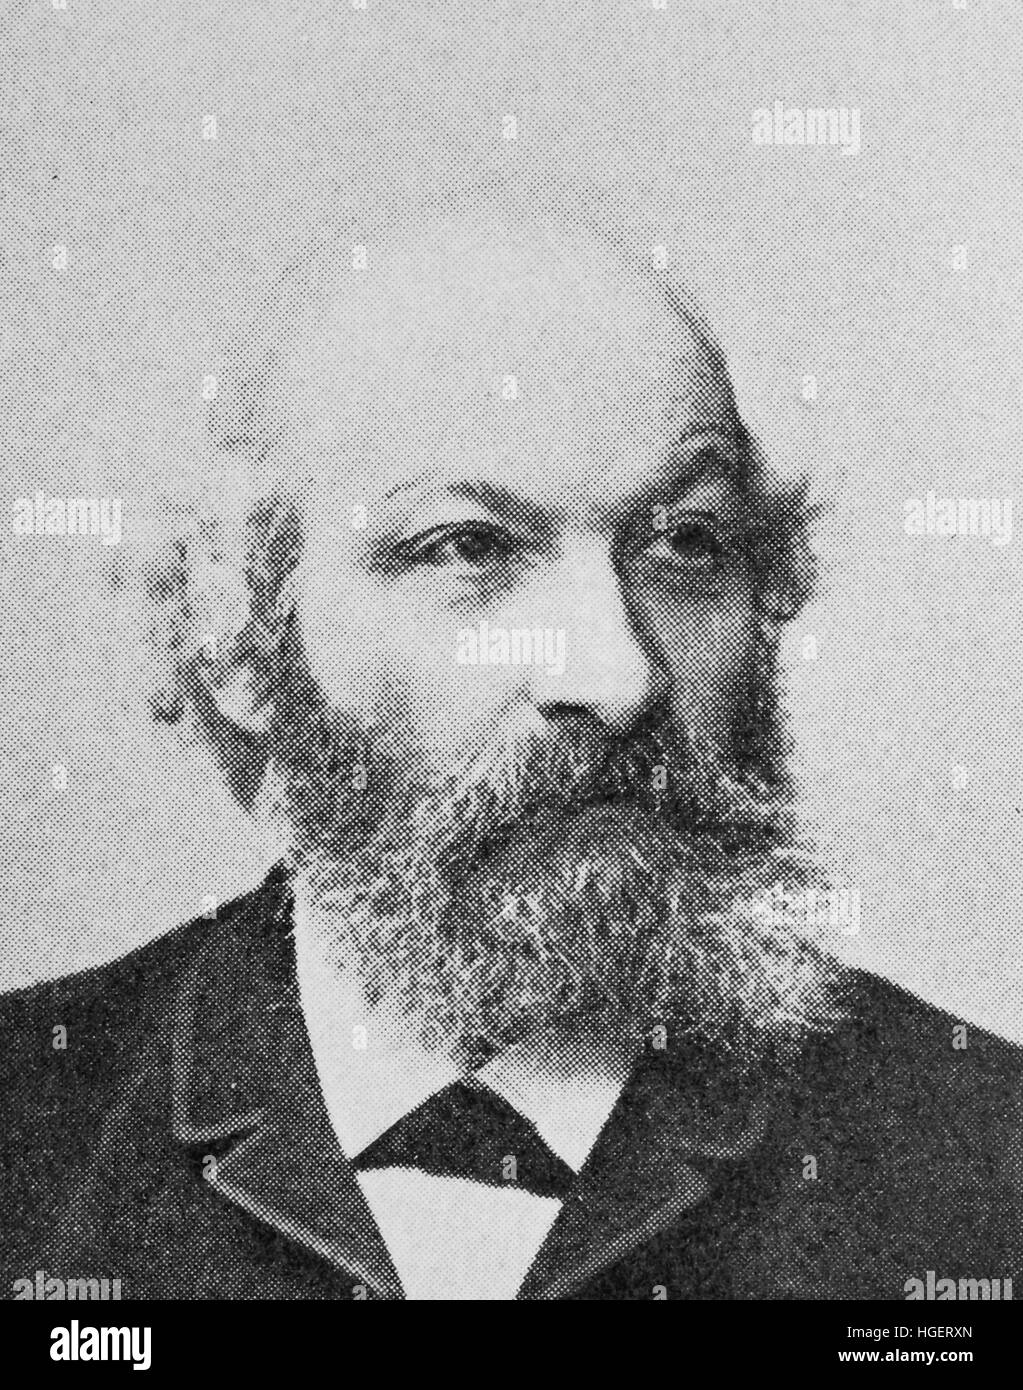 Abraham Lissauer, August 29, 1832 - September 29, 1908, was a German ...